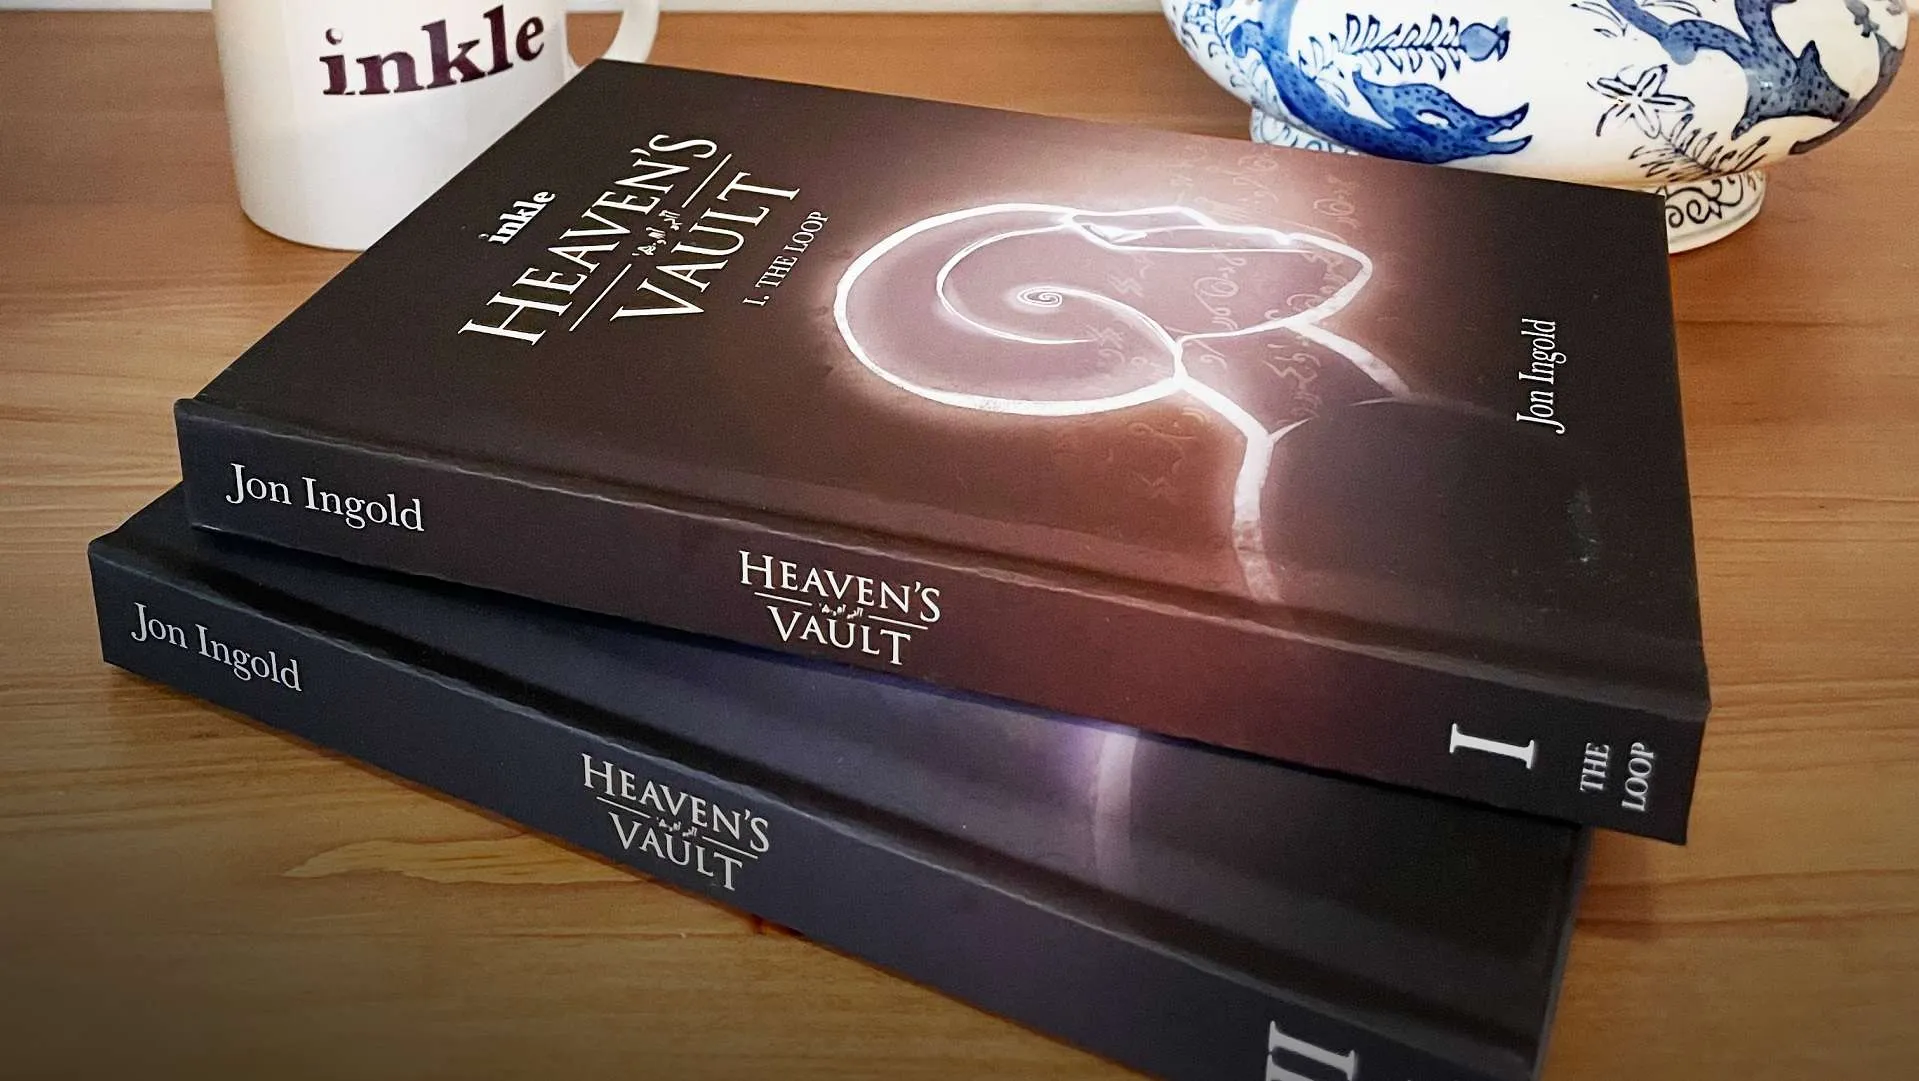 Heaven’s Vault limited editions novels